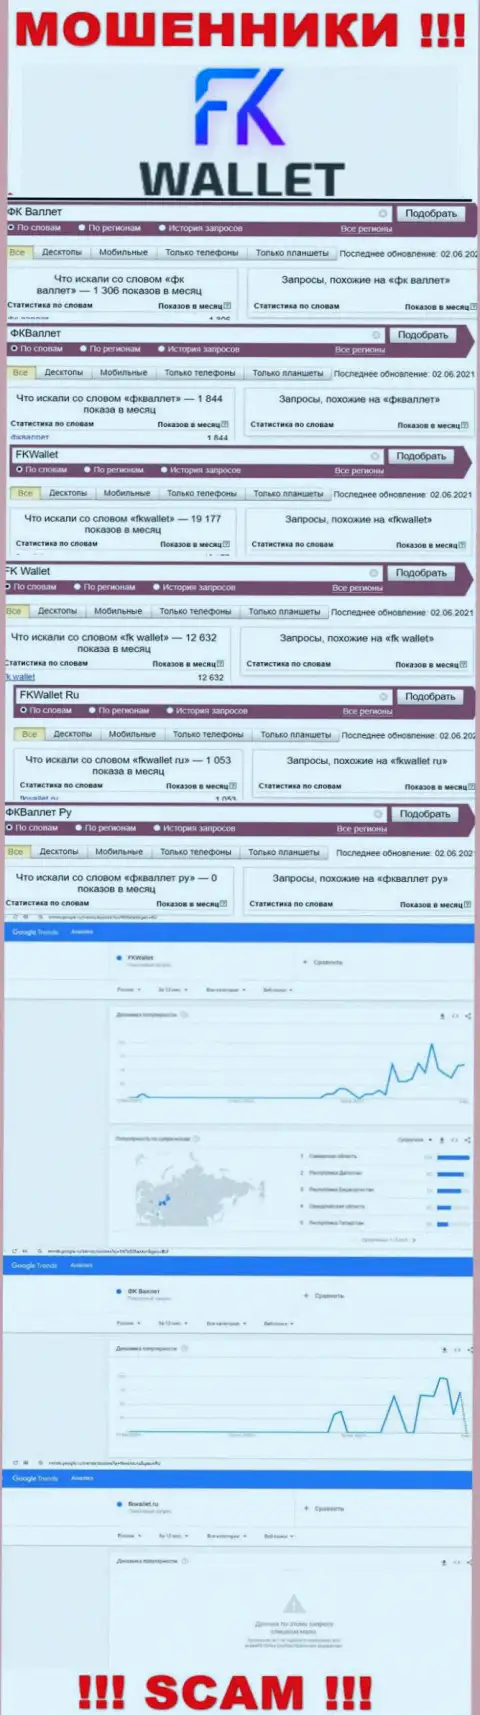 Скриншот статистических сведений поисковых запросов по жульнической компании FKWallet